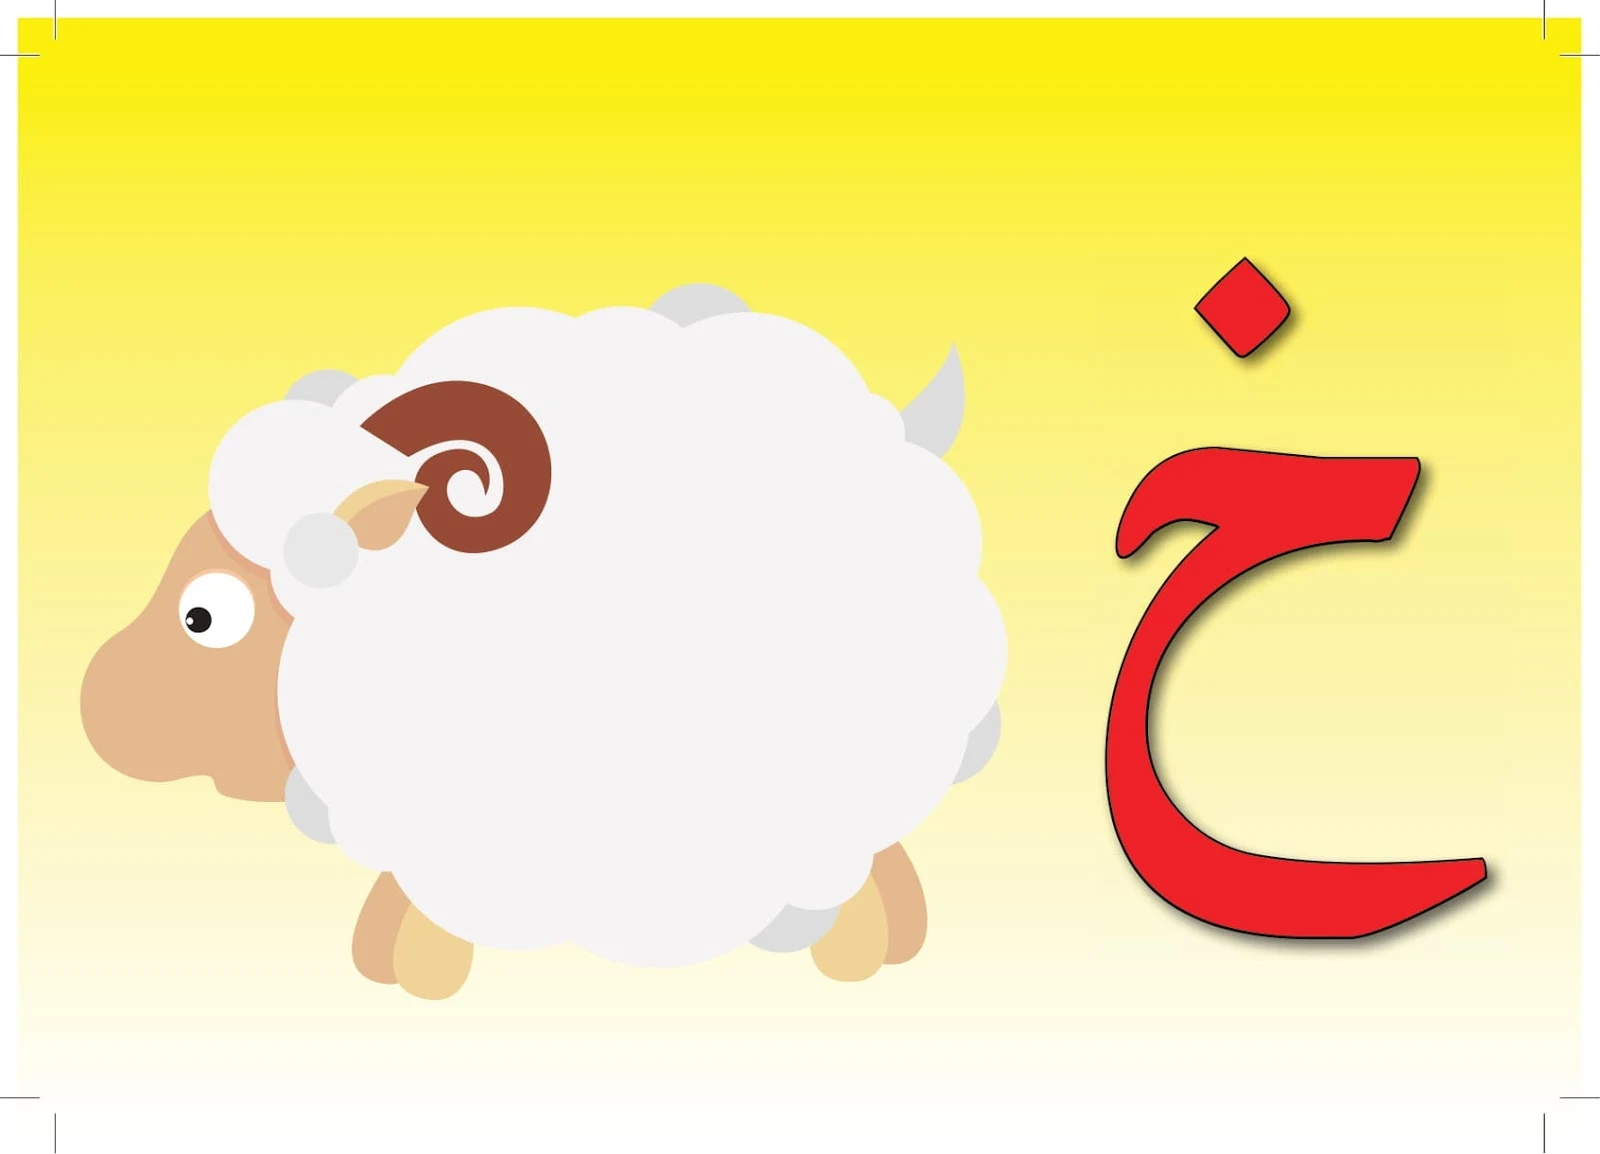 ملزمة تعليم اللغة العربية3 لغير الناطقين بها pdf تحميل مباشر